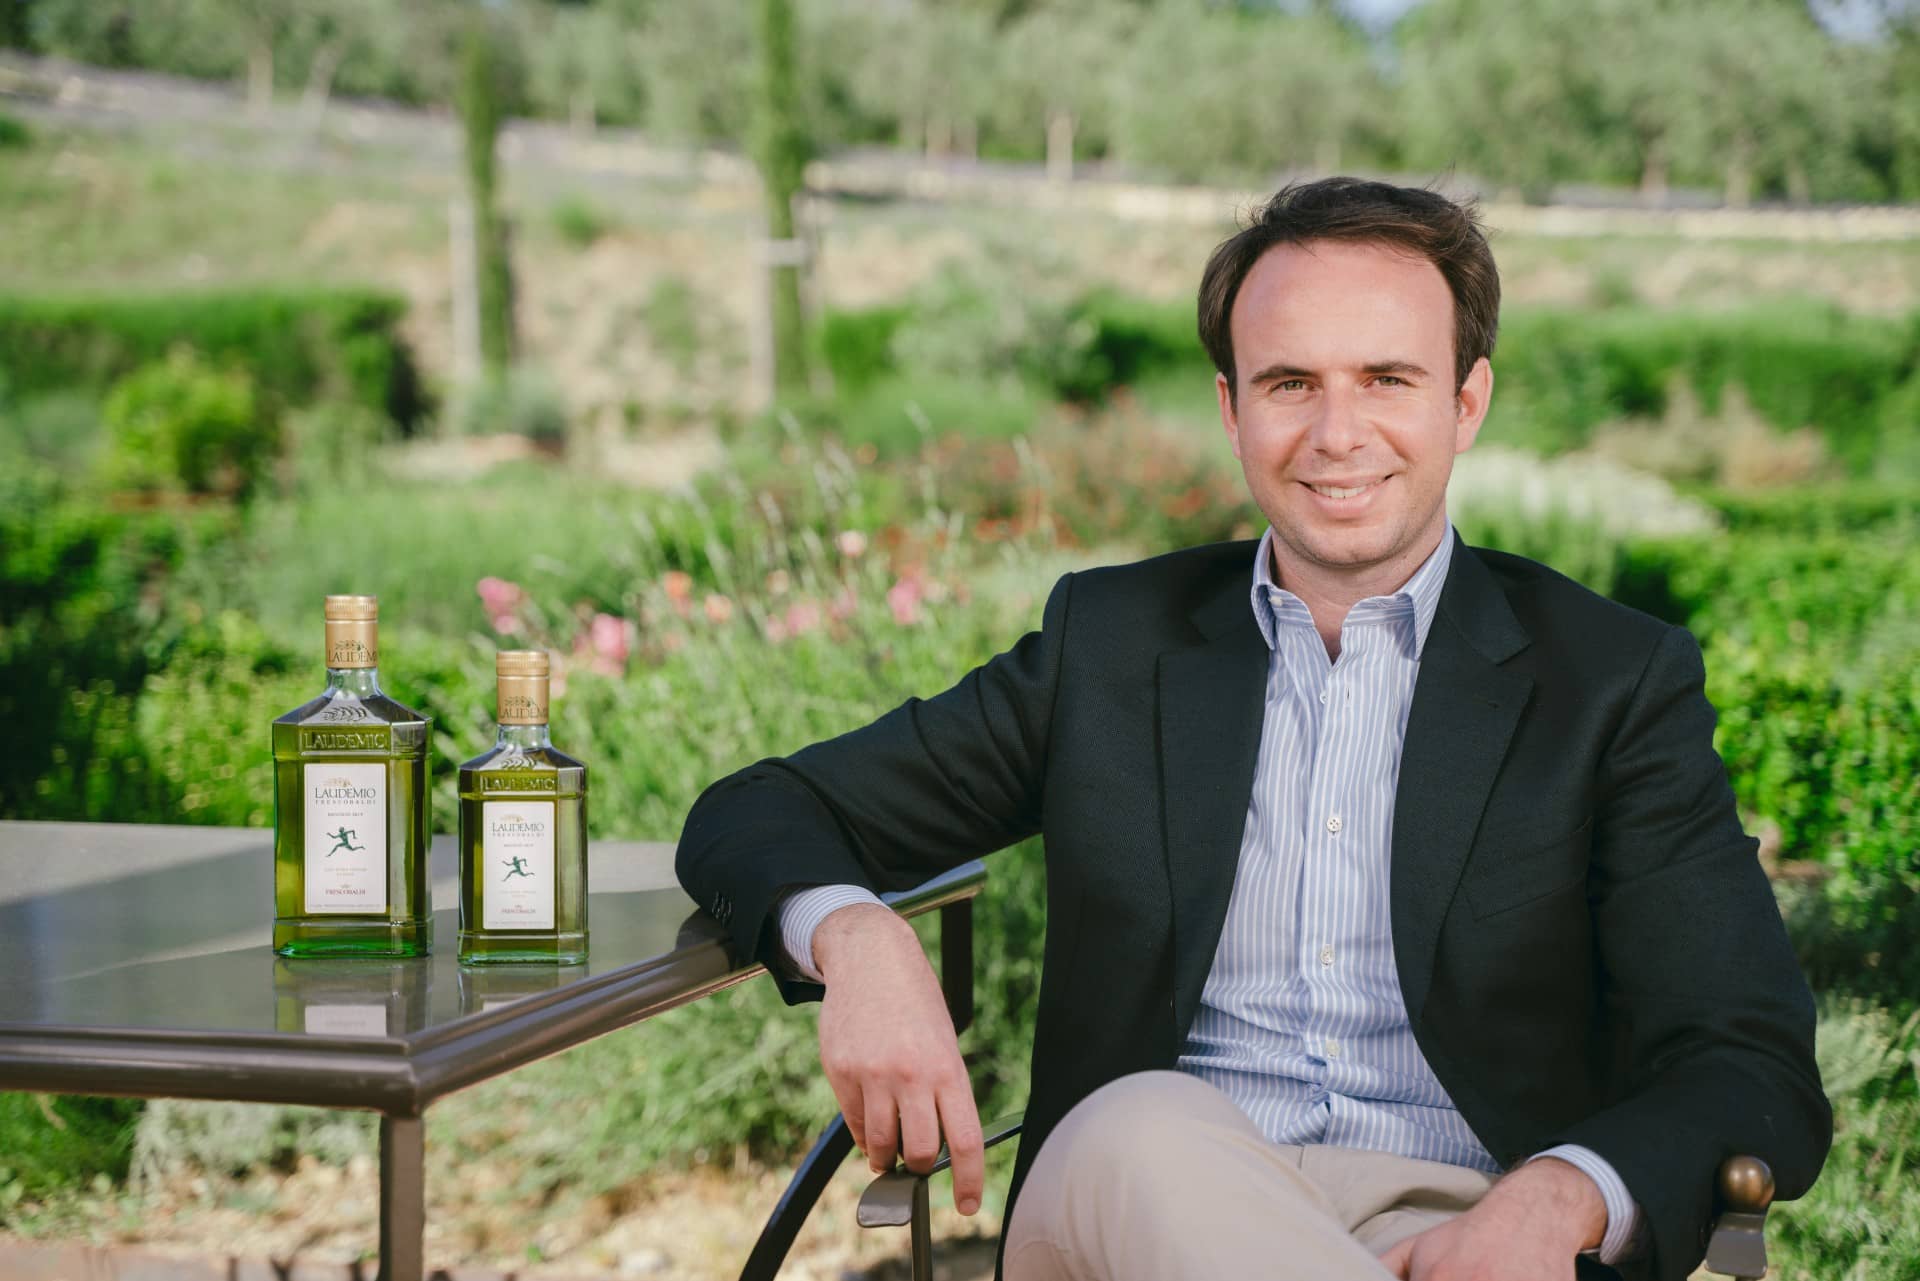 Европа-лучшие-конкурсы-оливкового масла-производство-тосканских-производителей-триумф-на-nyiooc-преодоление-поздних-заморозков-и-летней-зной-оливкового-масла-времена